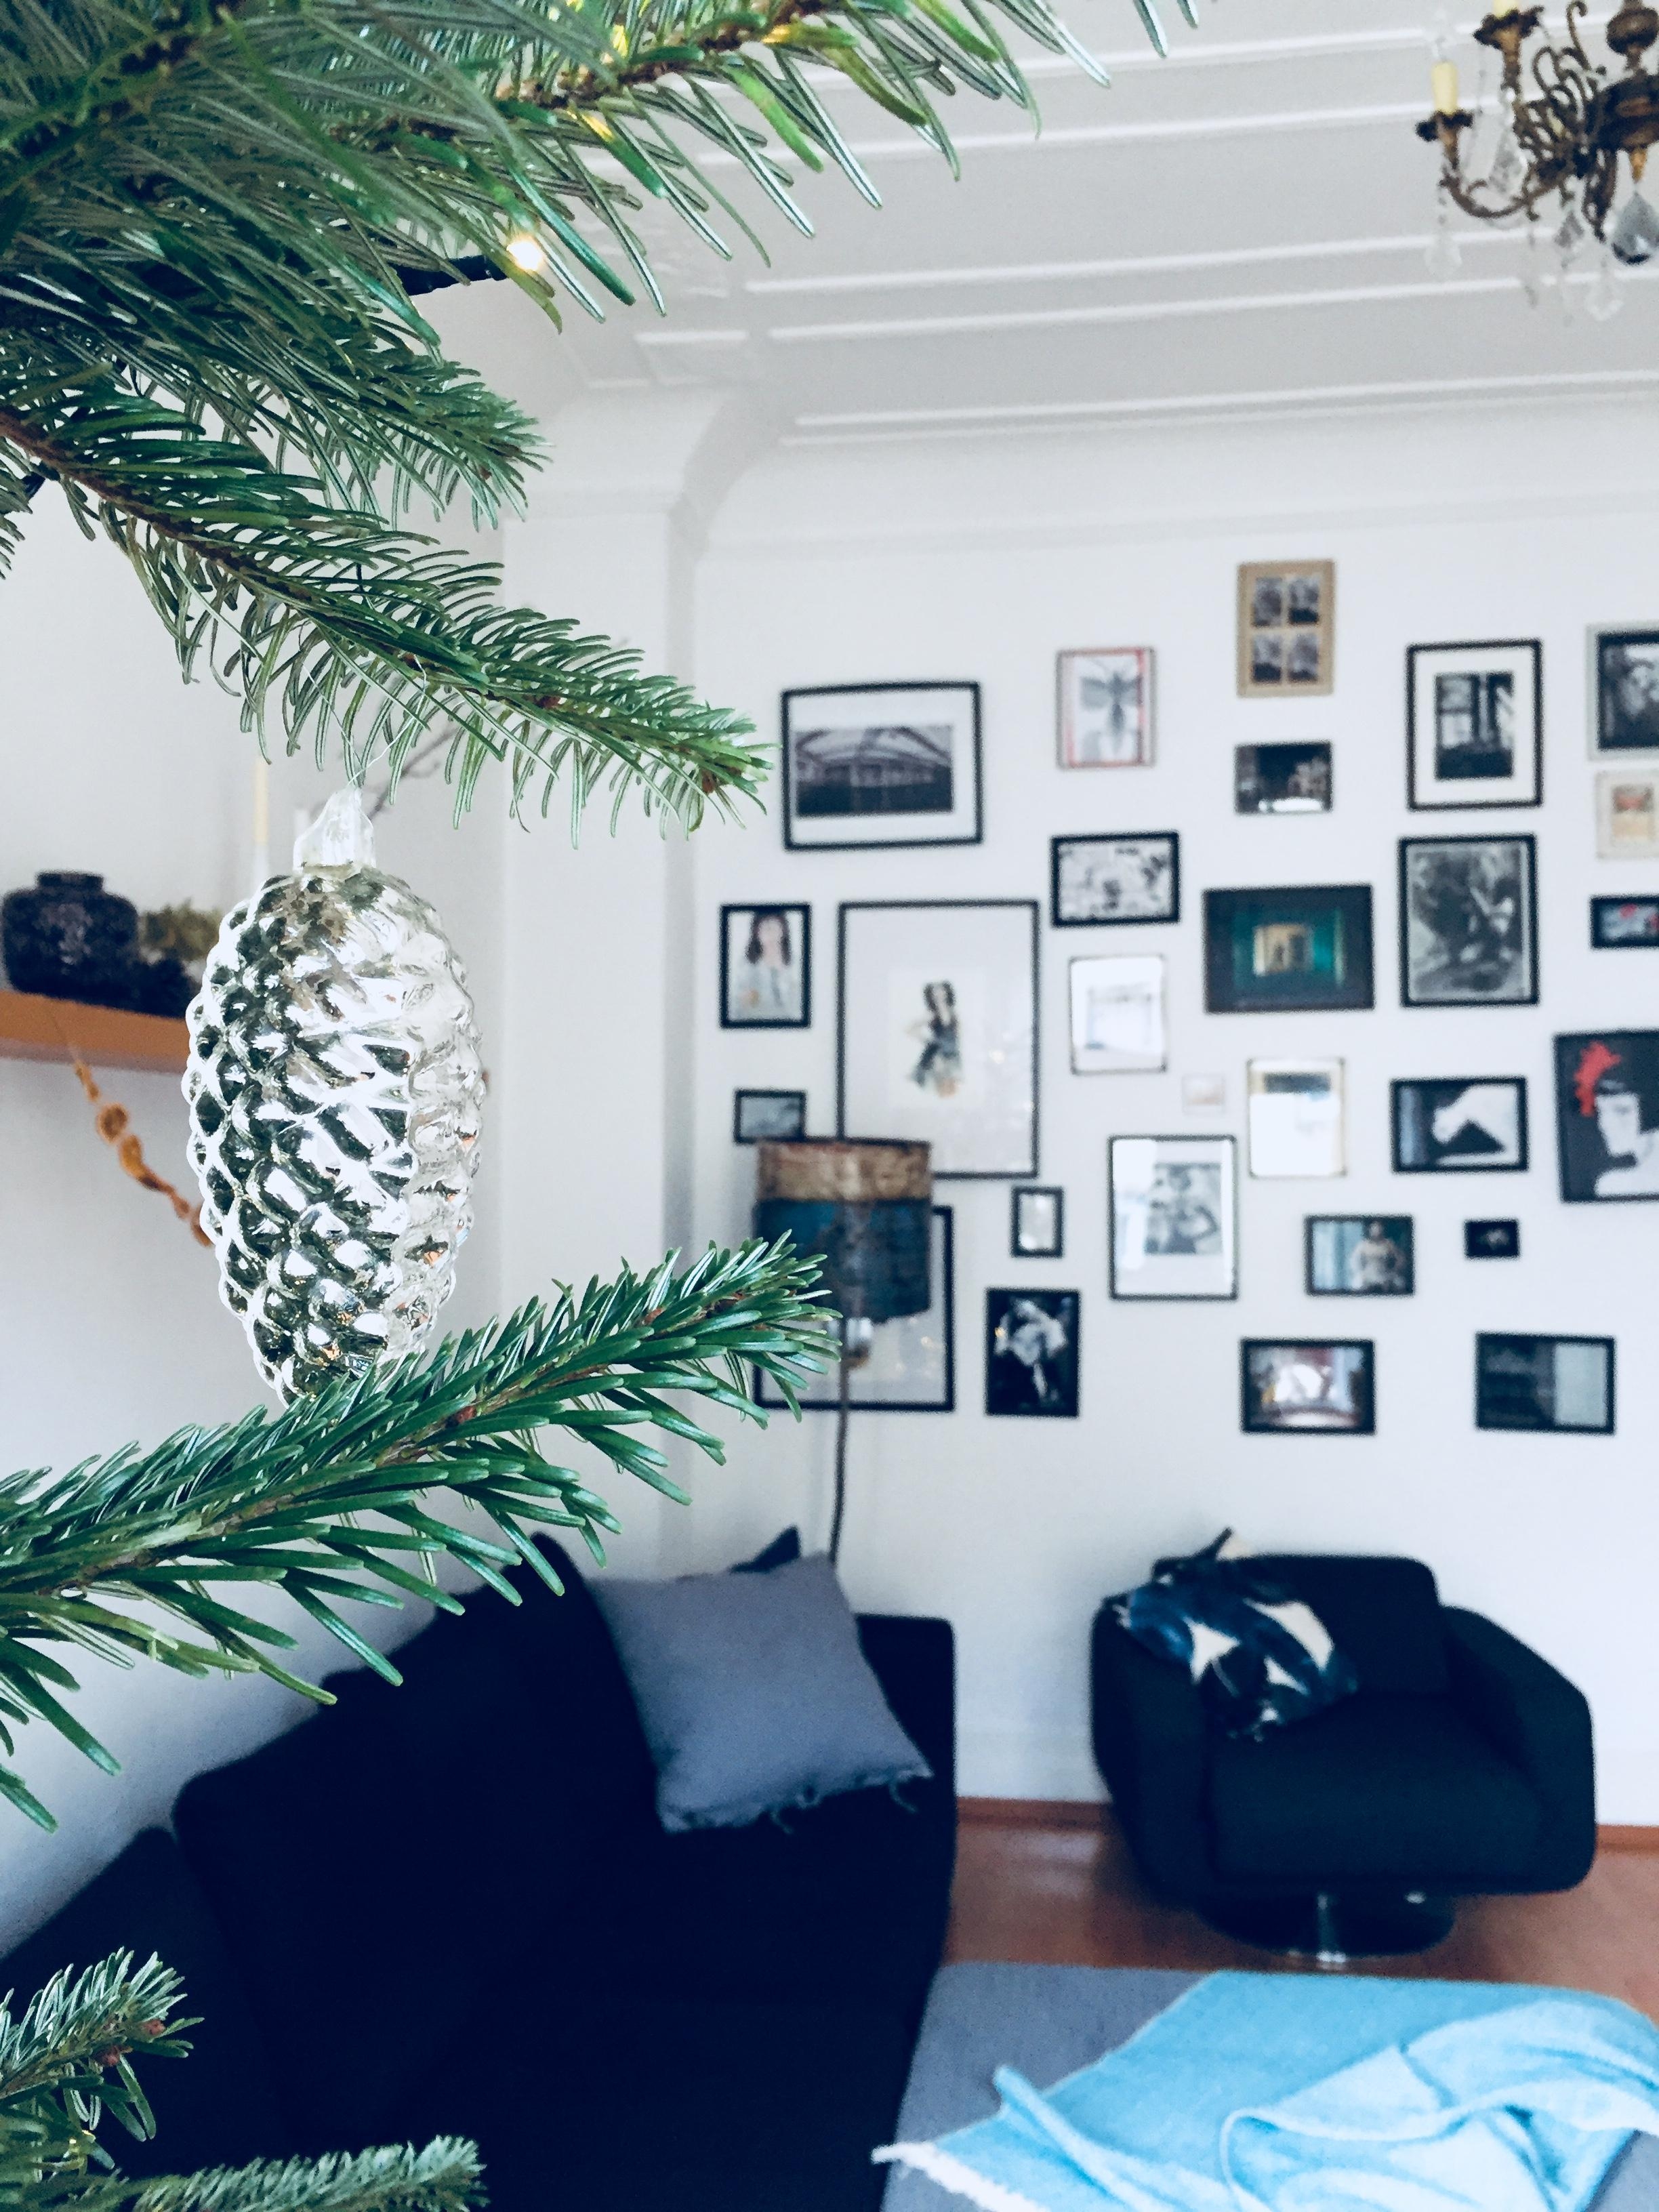 Frohes Fest ihr Lieben! #weihnachten #xmas #wohnzimmer #weihnachtsbaum #bilderwand #familytime #couchstyle #altbau